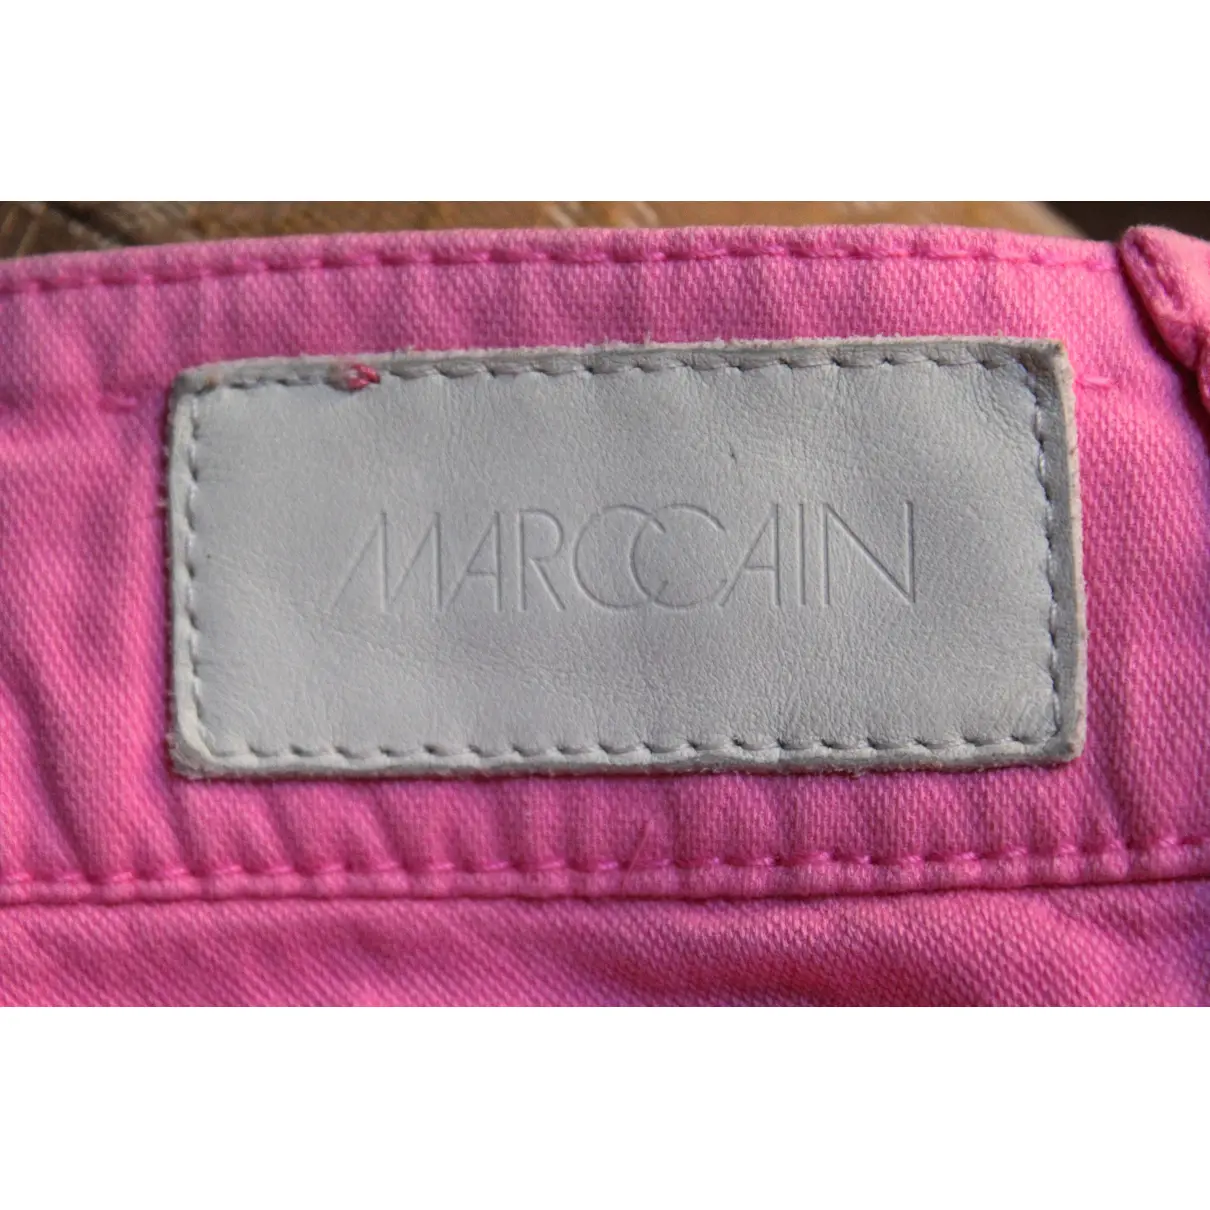 Luxury Marc Cain Jeans Women